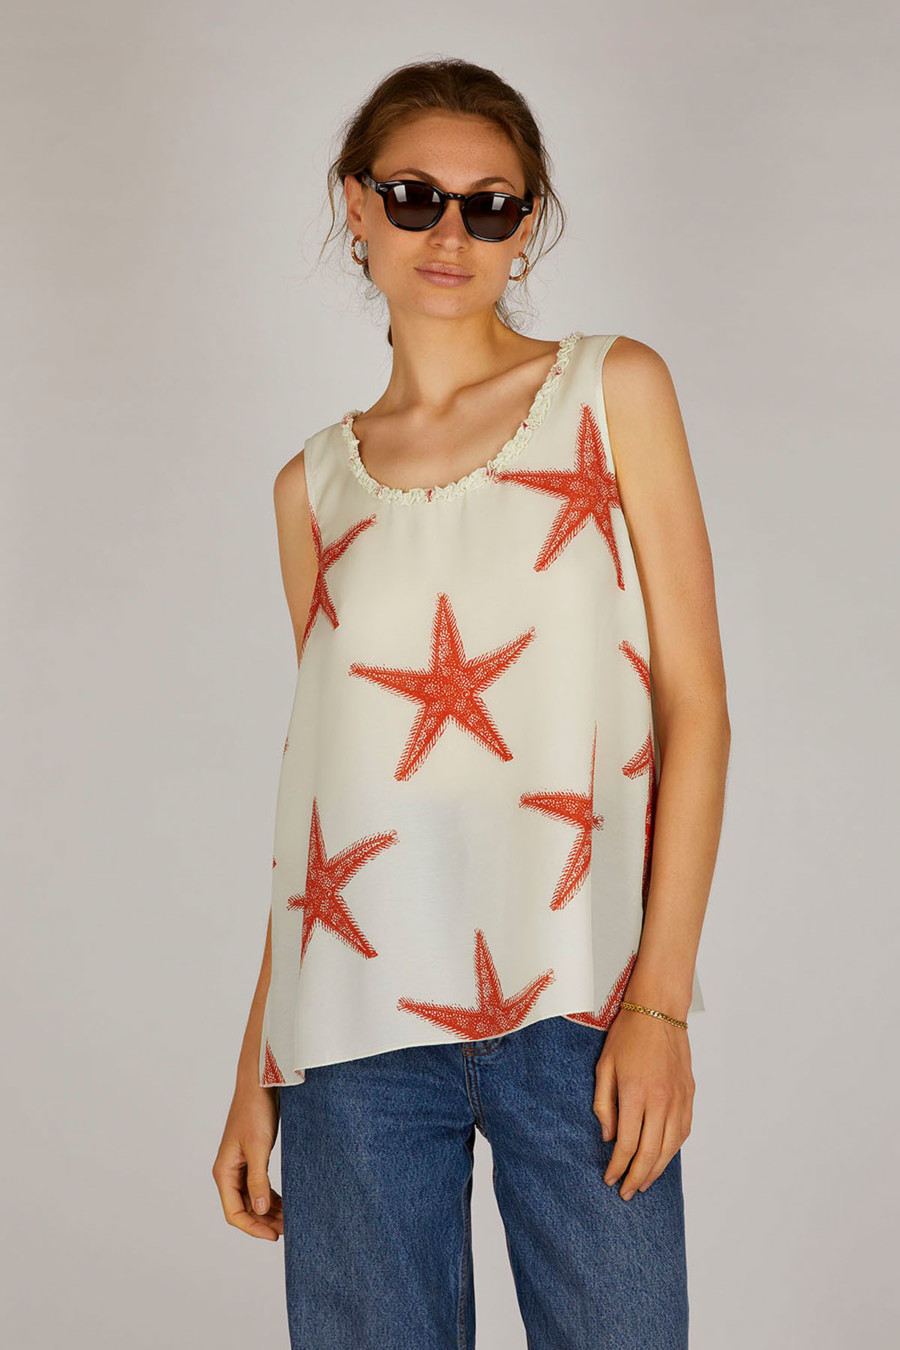 POLLY – Fließendes Top mit breiten Trägern – Farbe: Starfish Cayenne